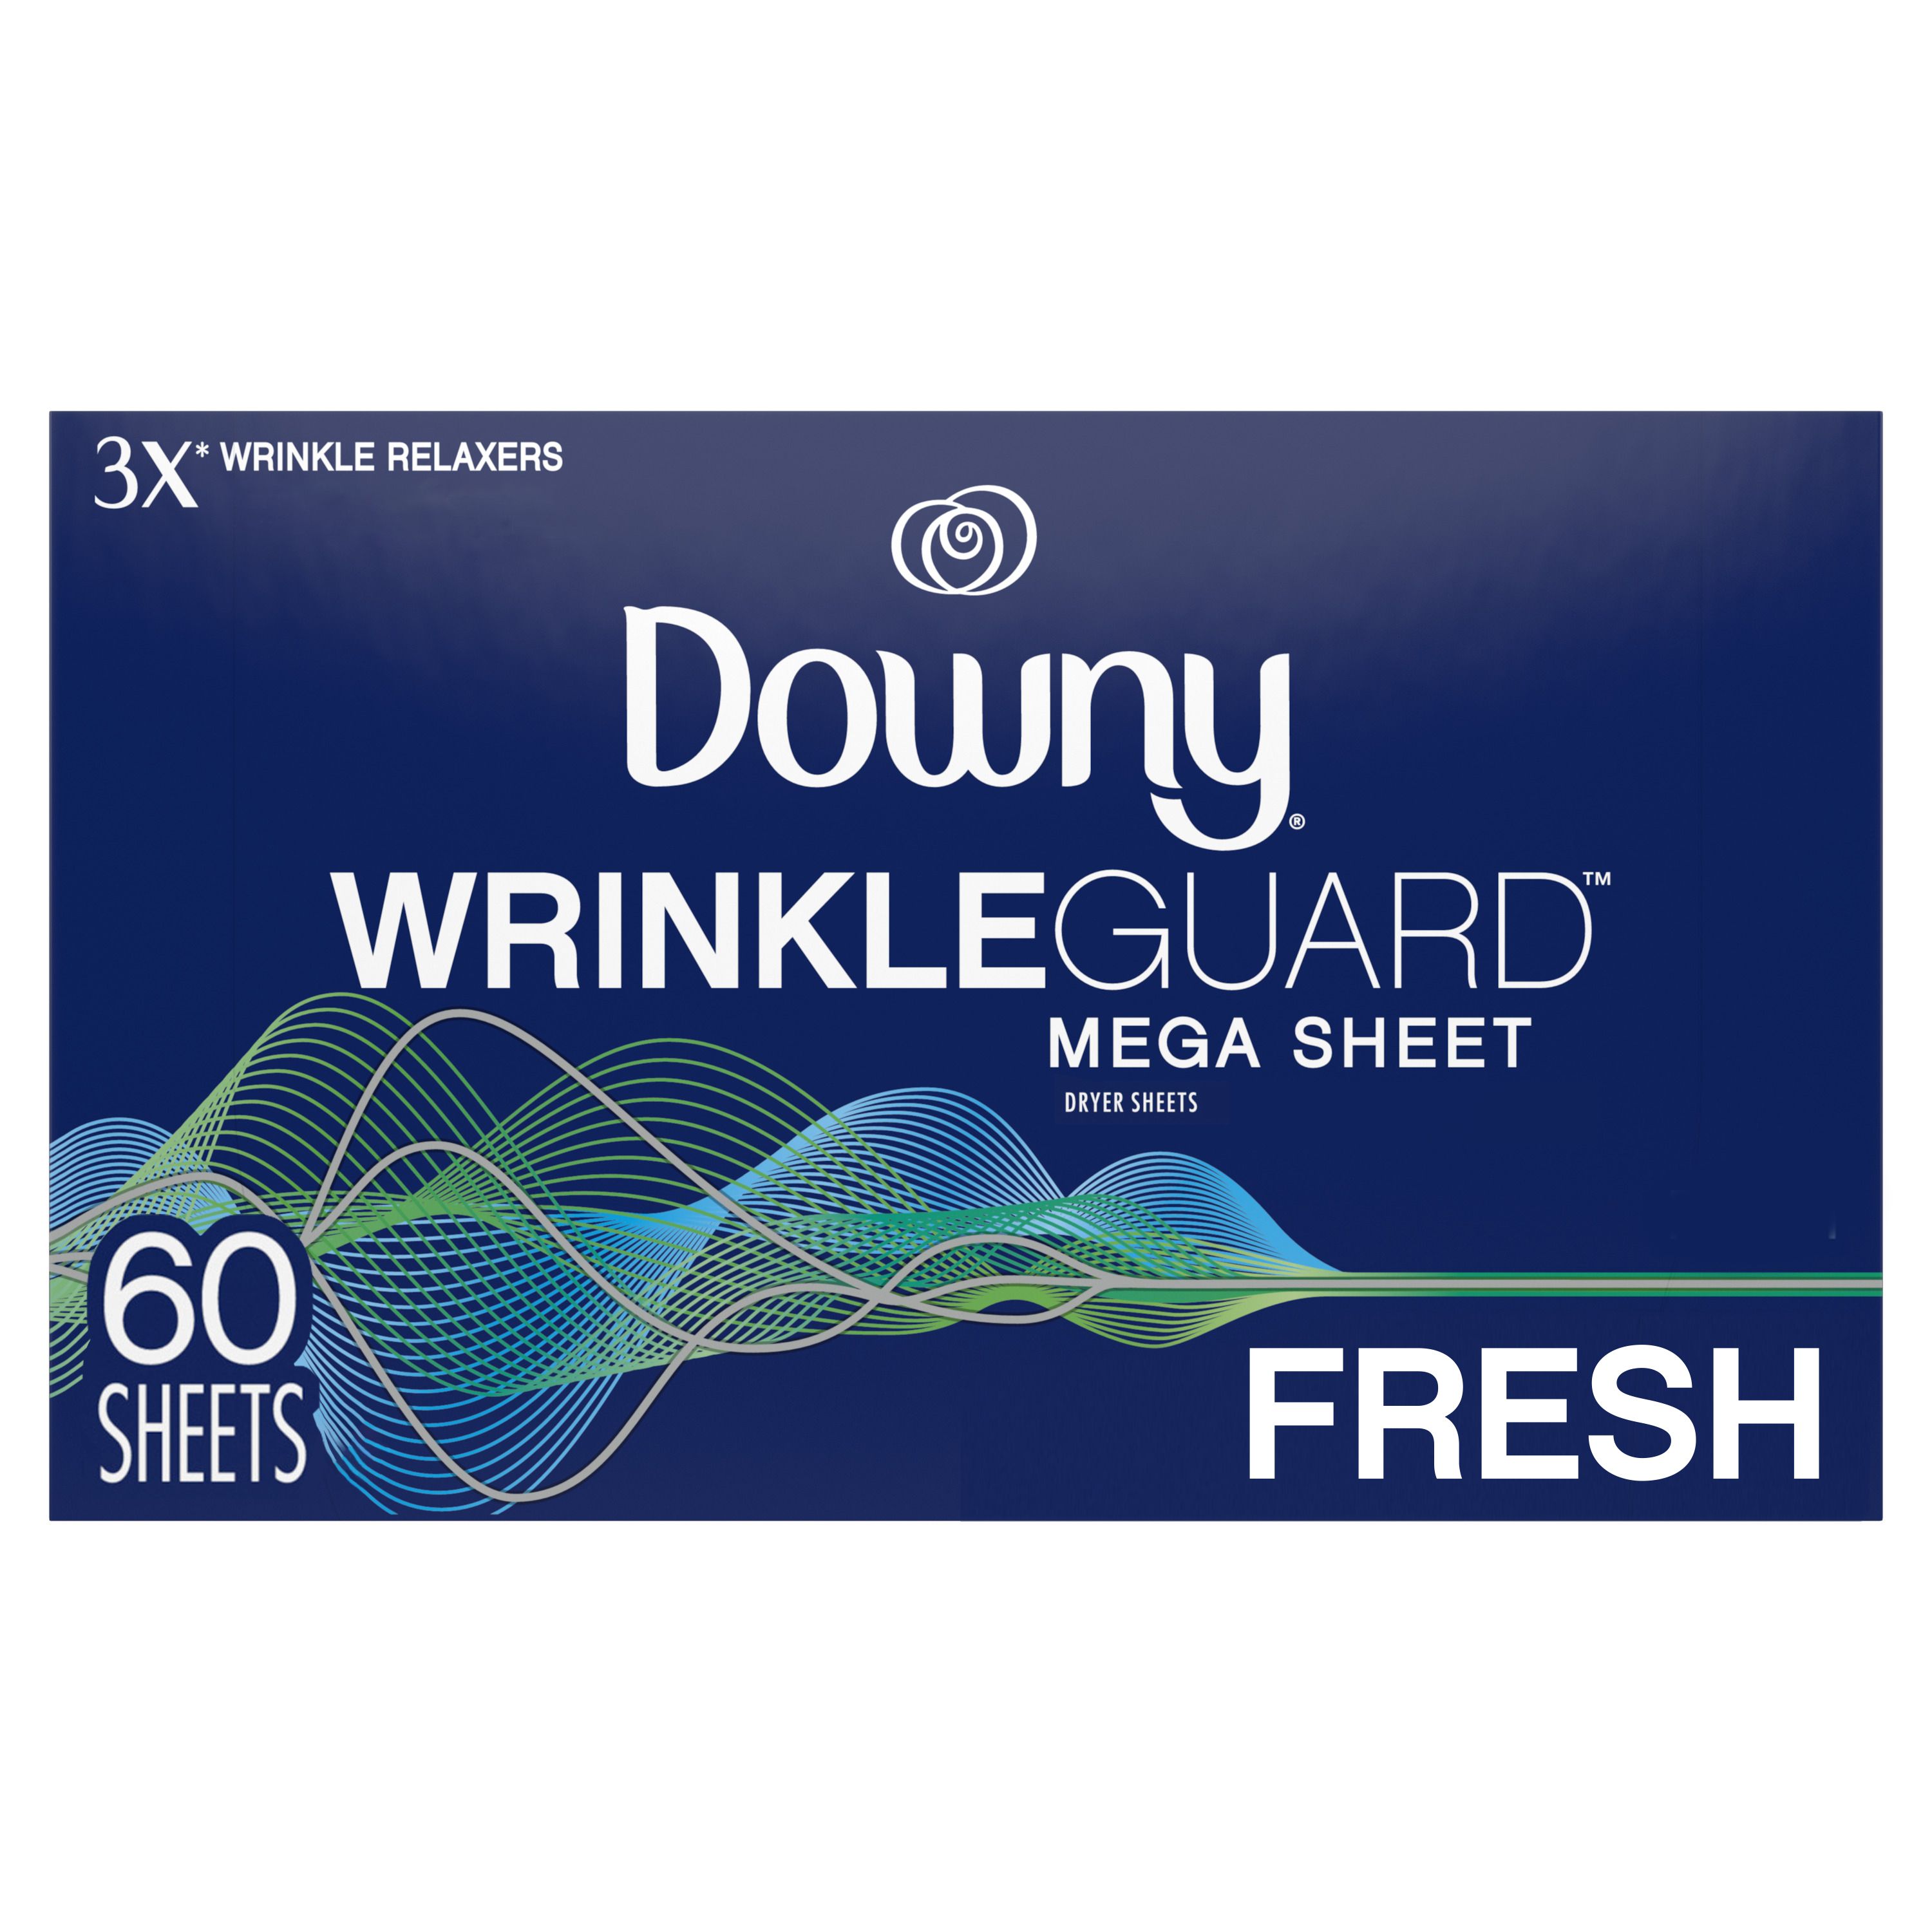 Wrinkleguard Mega Sheet Dryer Sheets